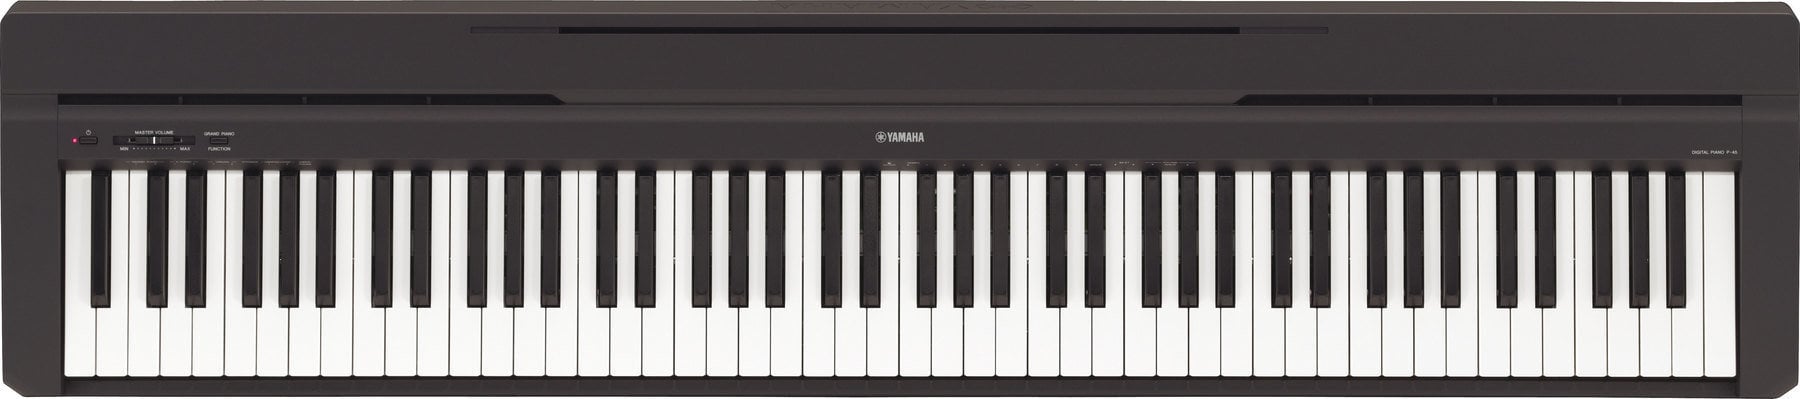 Digitální stage piano Yamaha P-45 B Digitální stage piano